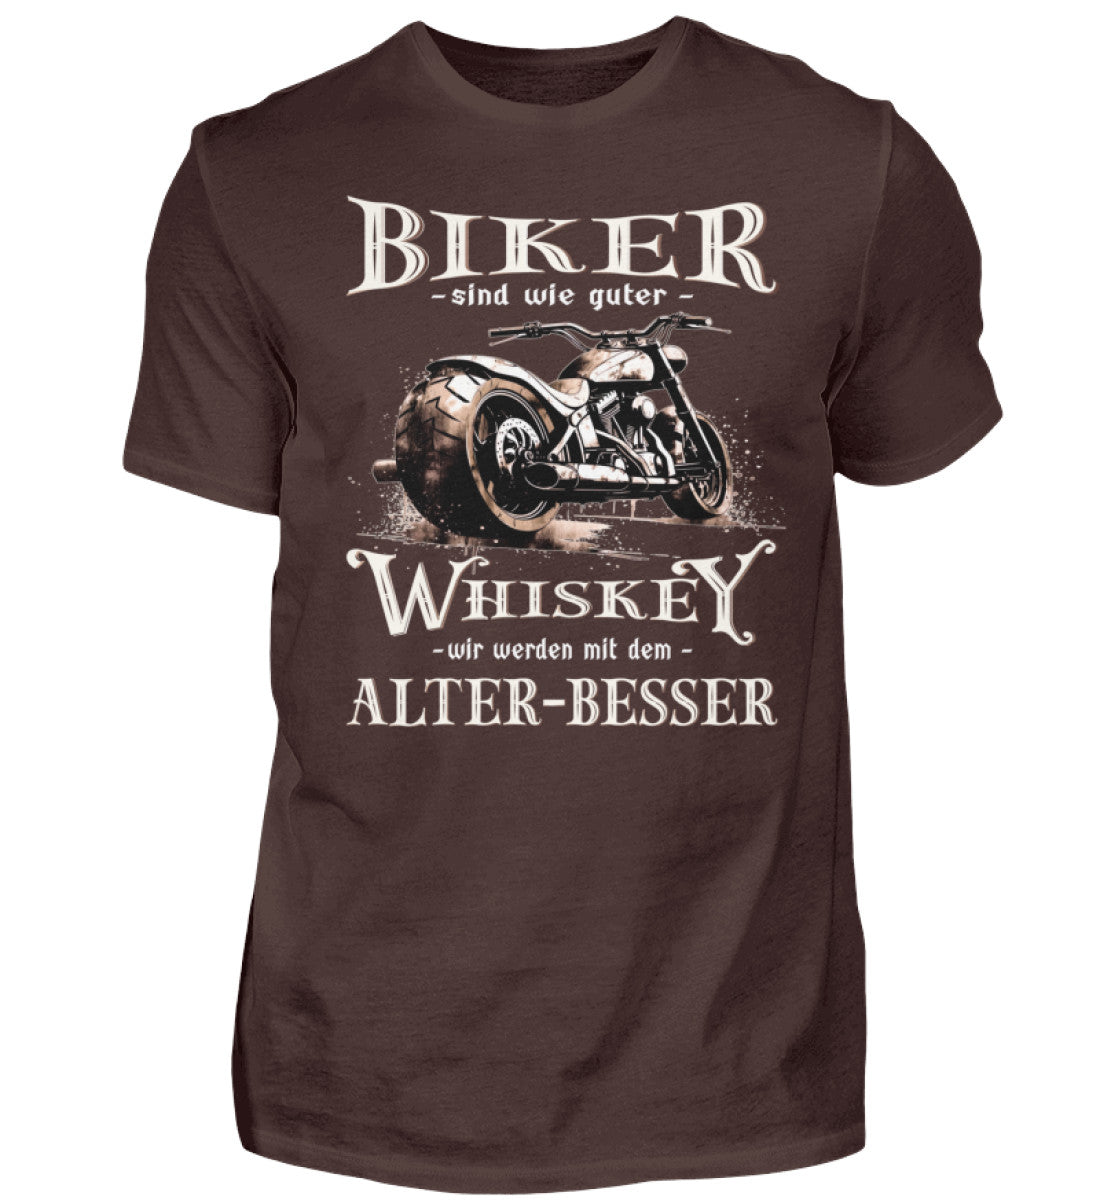 Biker T-Shirt mit einem vintage Aufdruck, Biker sind wie gute Whiskey - wir werden mit dem Alter besser in braun. 